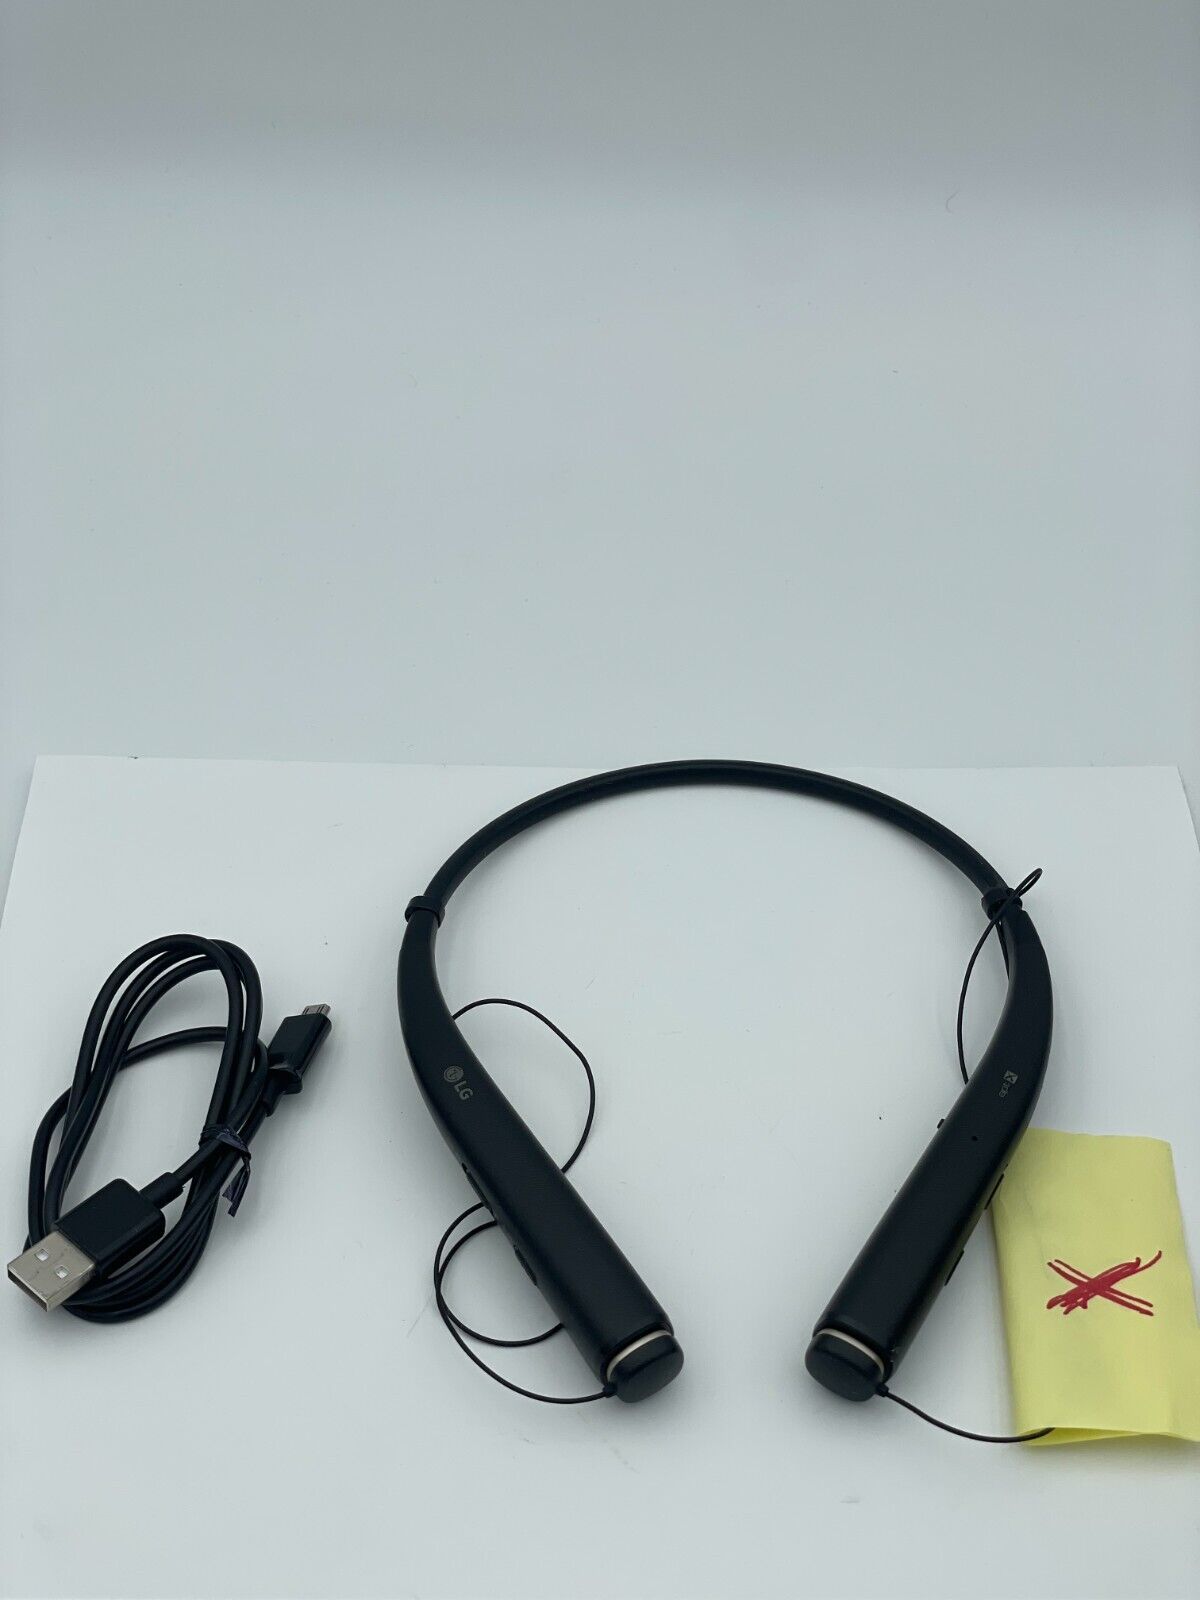 LG Pro HBS-780 In-Ear Bluetooth Wireless Headphones Black Left Side NOT Working - $24.95